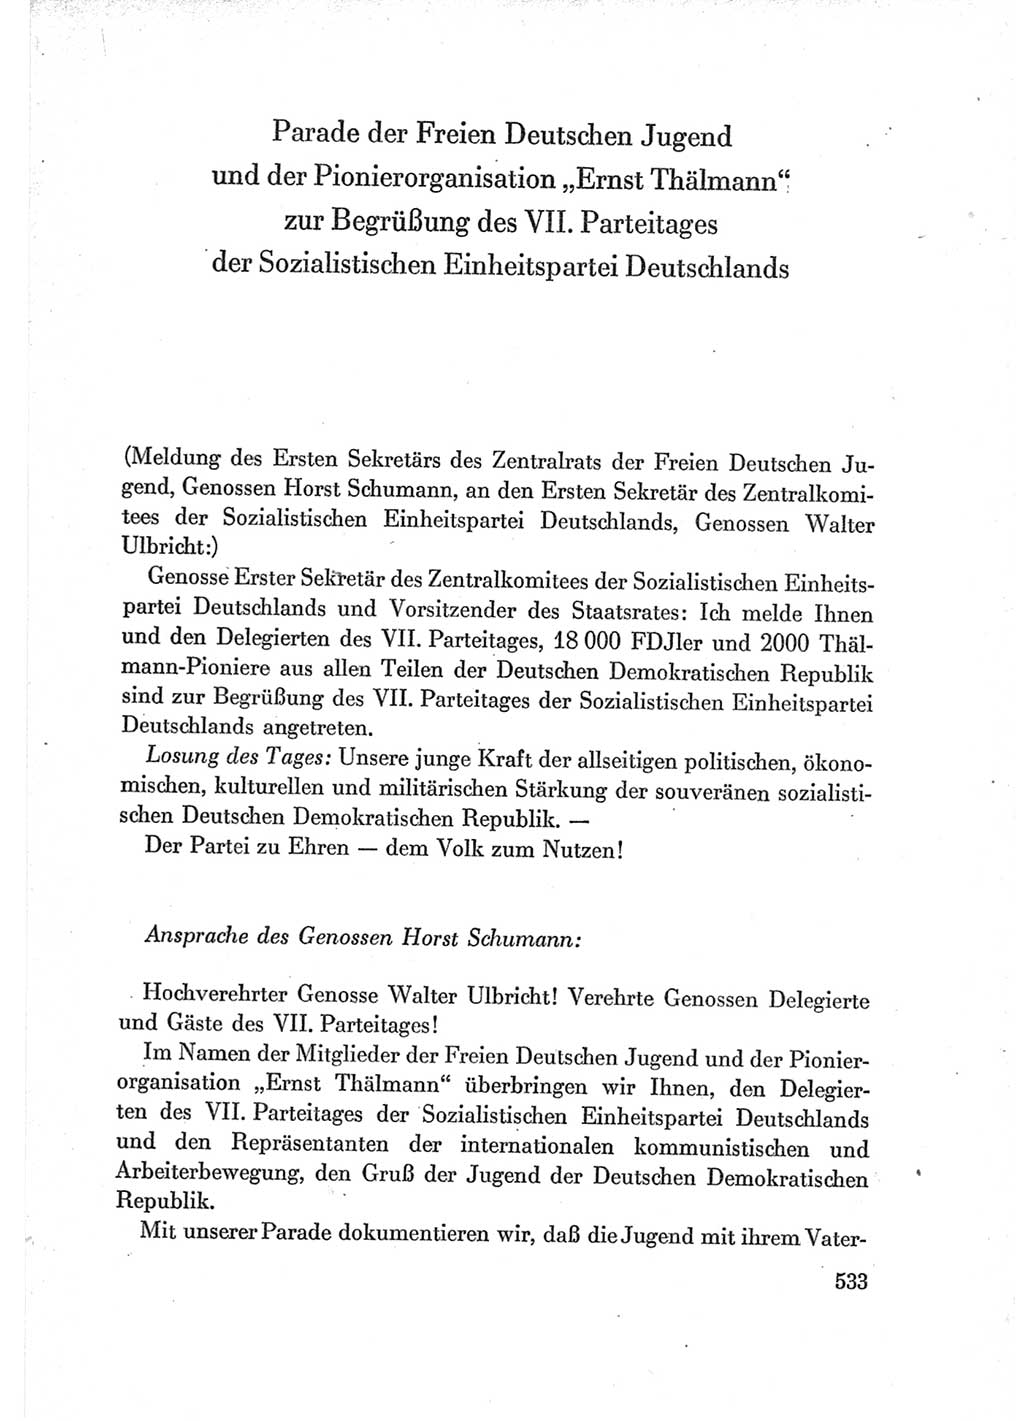 Protokoll der Verhandlungen des Ⅶ. Parteitages der Sozialistischen Einheitspartei Deutschlands (SED) [Deutsche Demokratische Republik (DDR)] 1967, Band Ⅰ, Seite 533 (Prot. Verh. Ⅶ. PT SED DDR 1967, Bd. Ⅰ, S. 533)